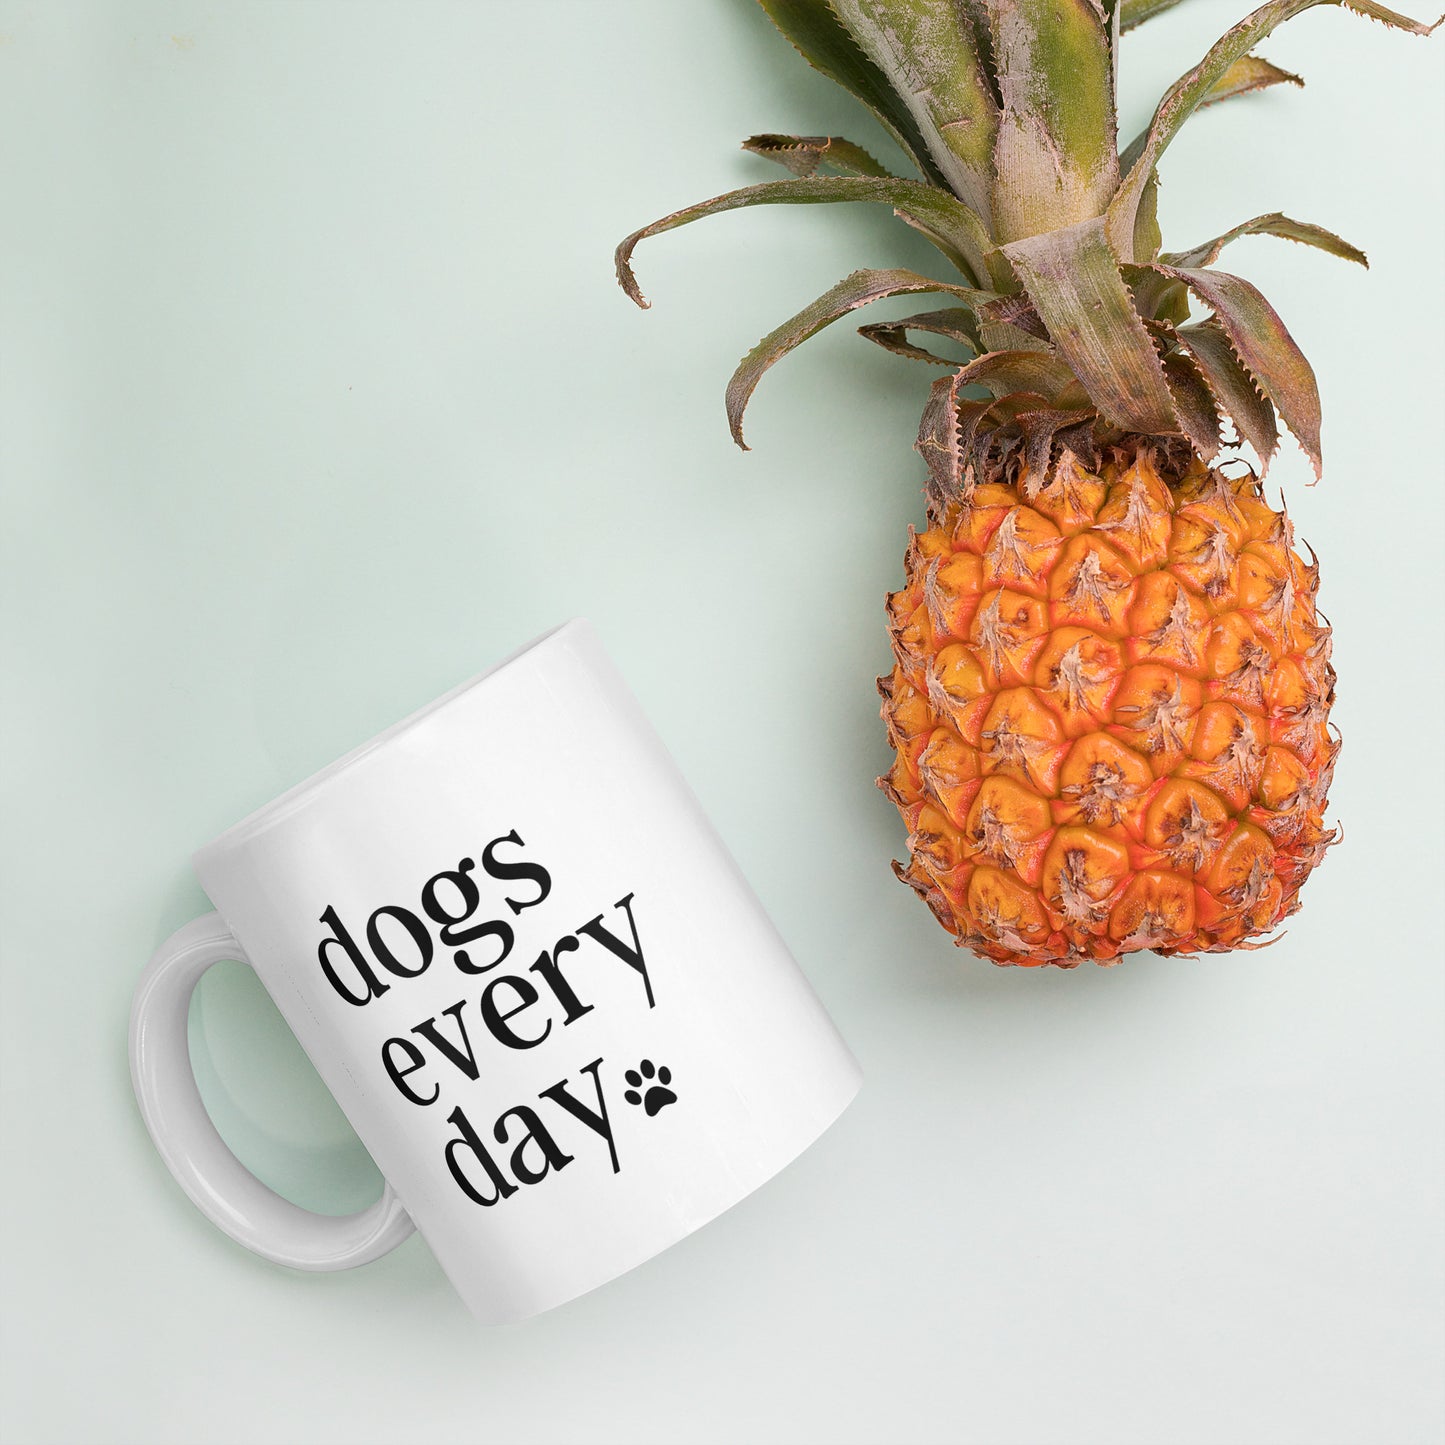 Dogs Every Day - Dog Lovers Mug